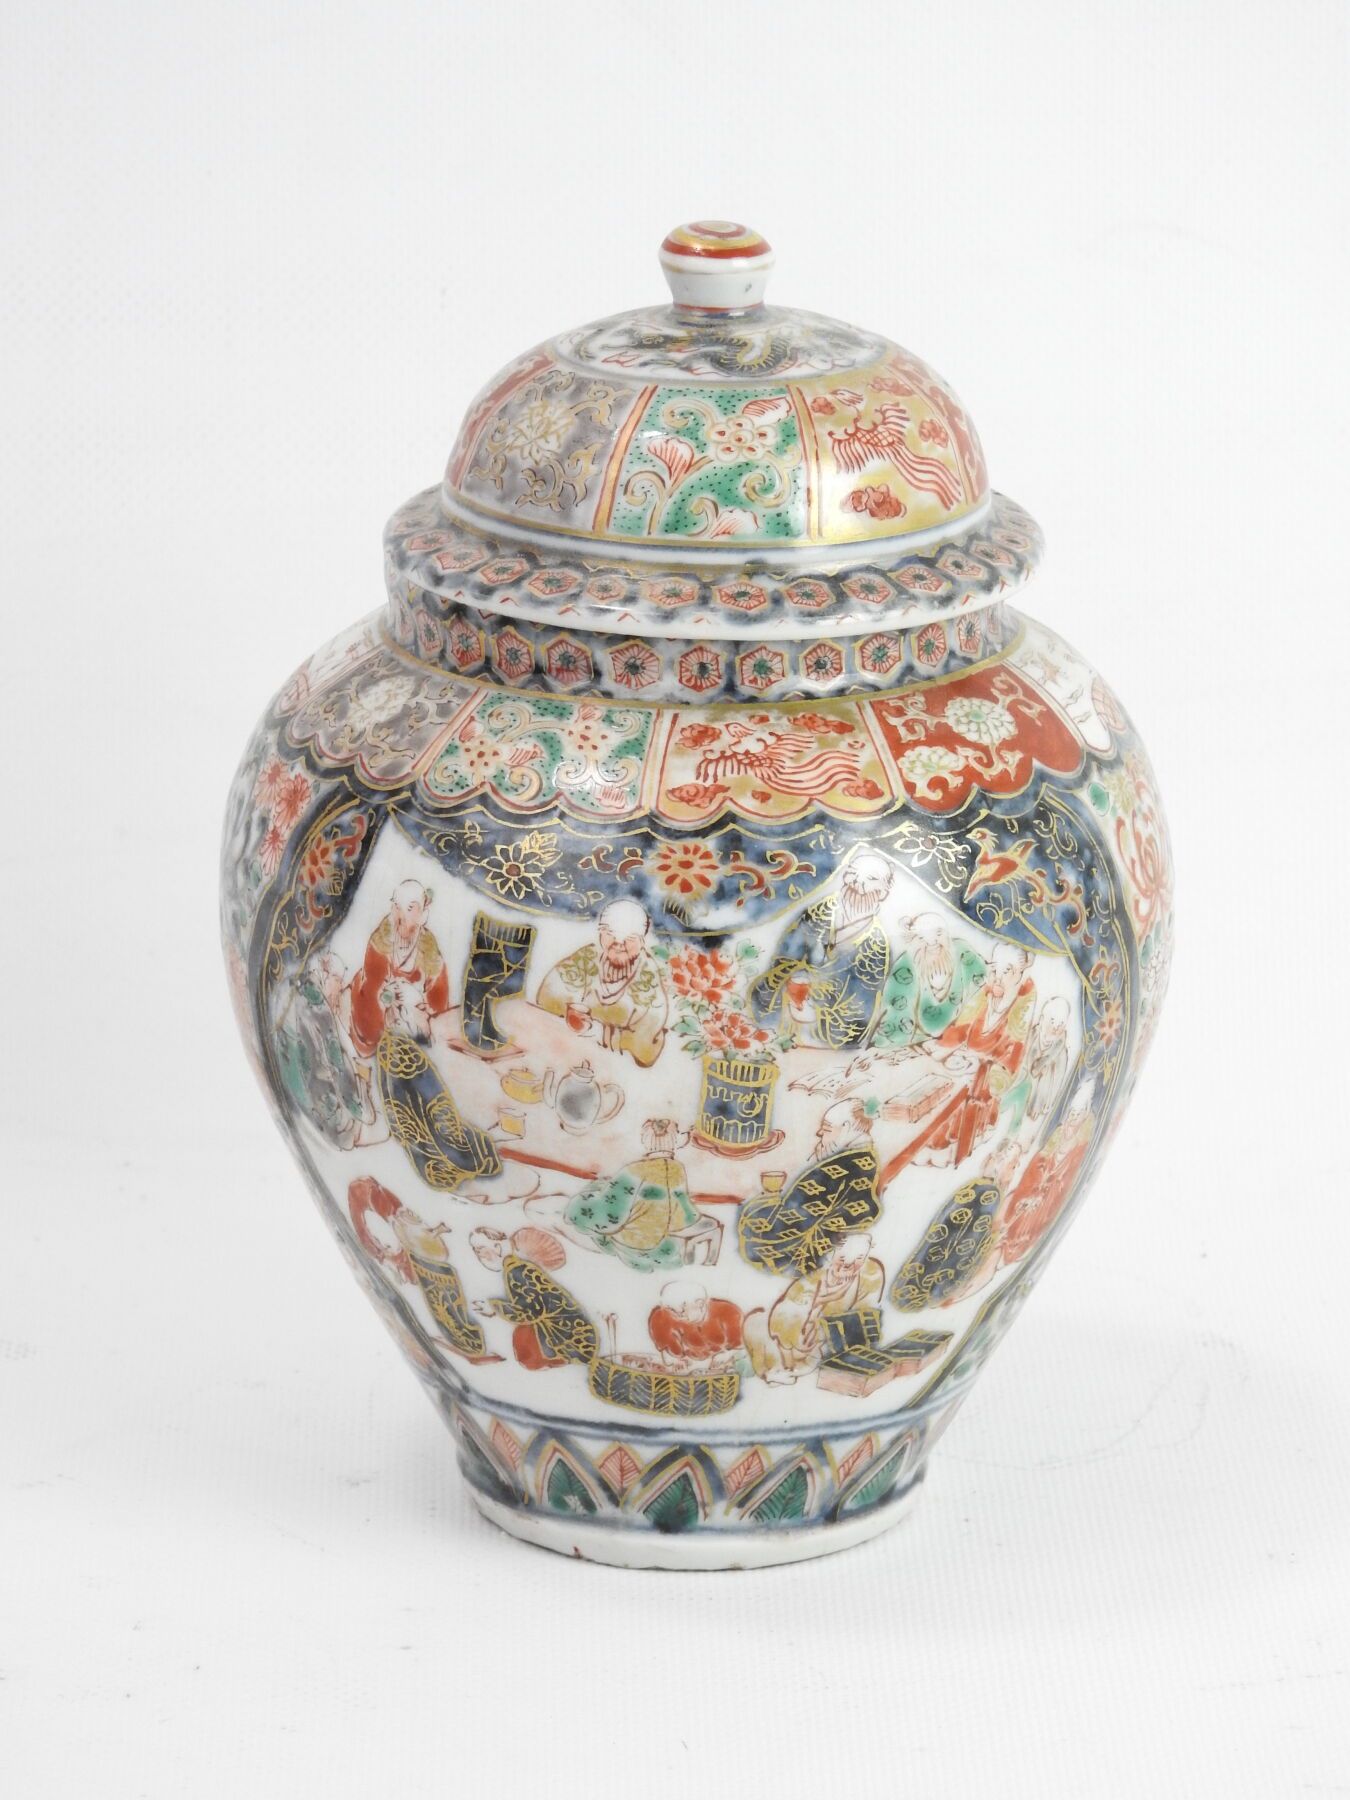 Null 中国：瓷器覆盖的卵形花瓶，有蓝色、红色和金色的人物和花卉装饰，称为伊玛瑞。19世纪。高度：20厘米。底部的小裂缝